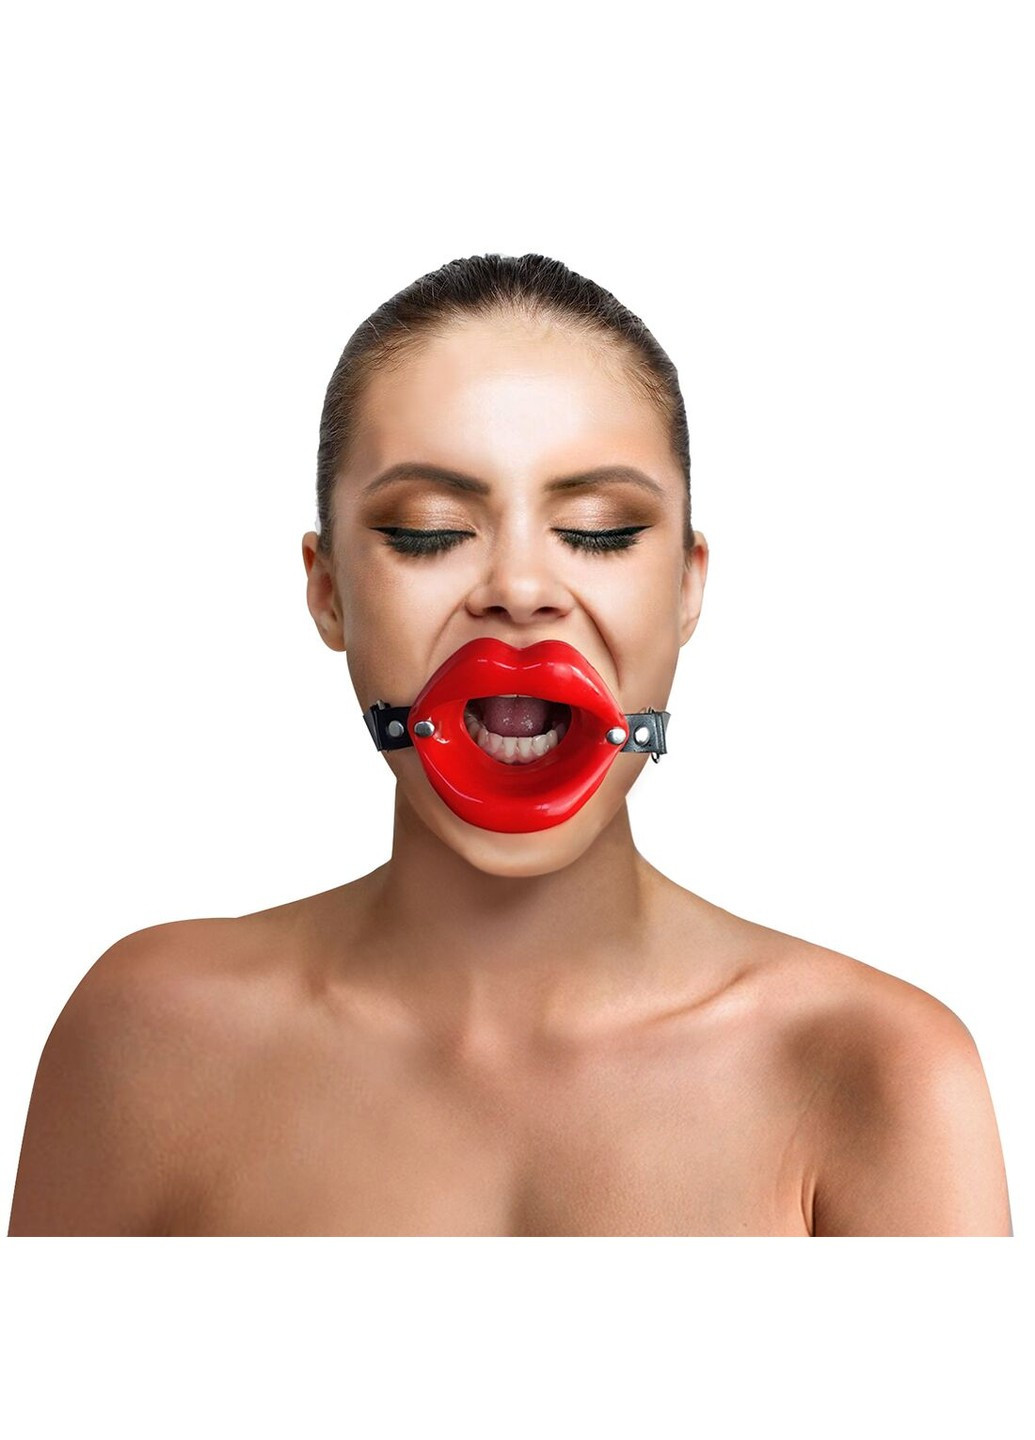 Кляп расширитель в форме губ - Gag Lips, натуральная кожа Art of Sex (277235439)